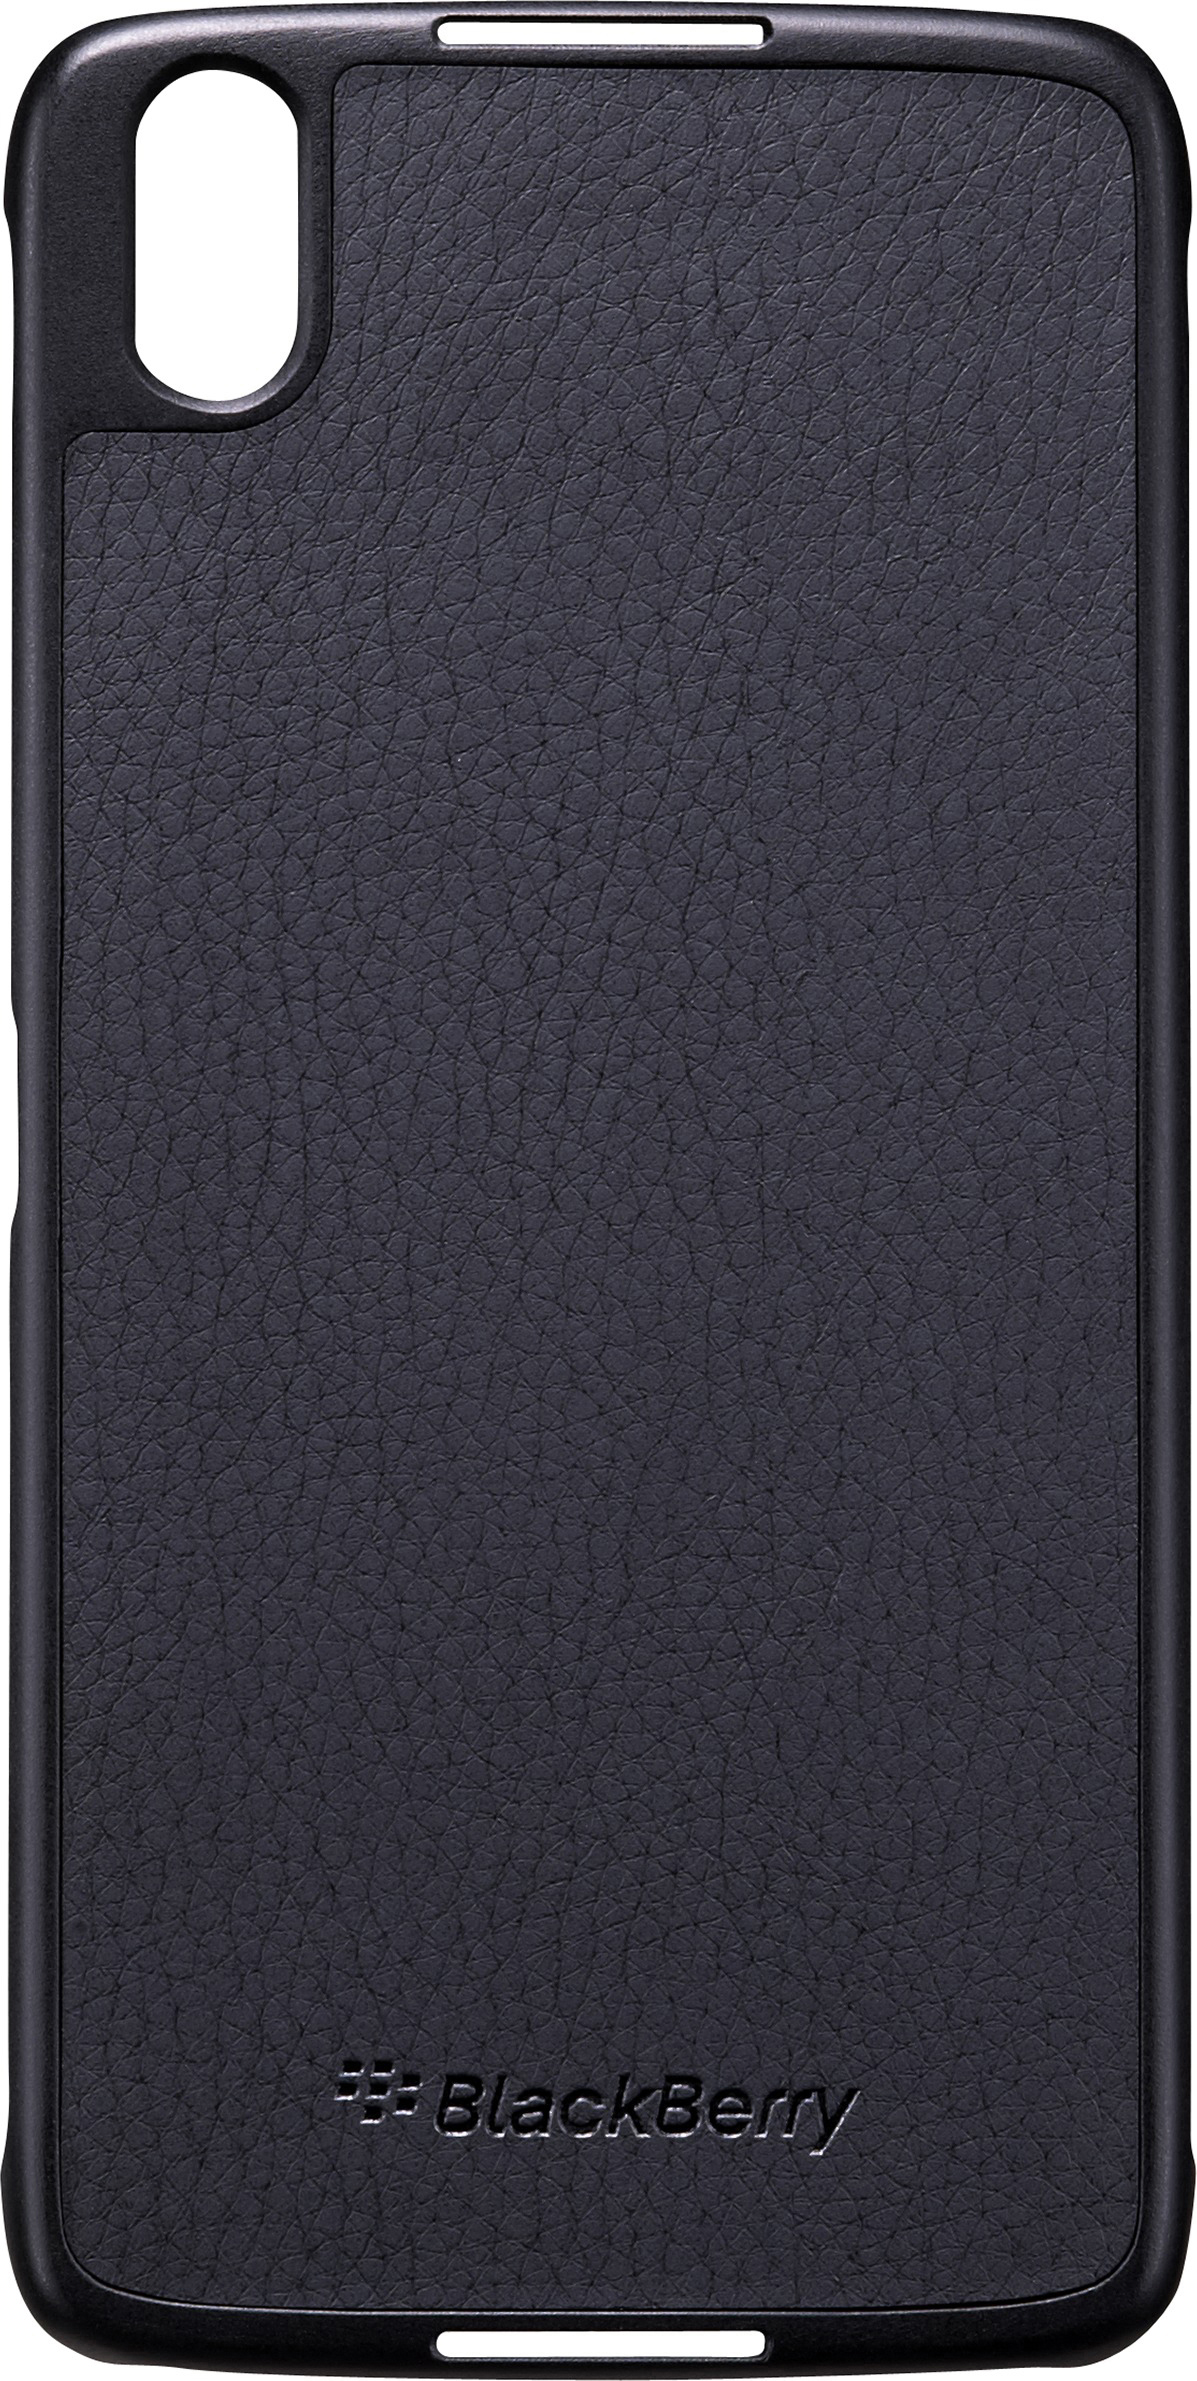 BLACKBERRY Hard Blackberry, Backcover, Schwarz Shell, DTEK 50